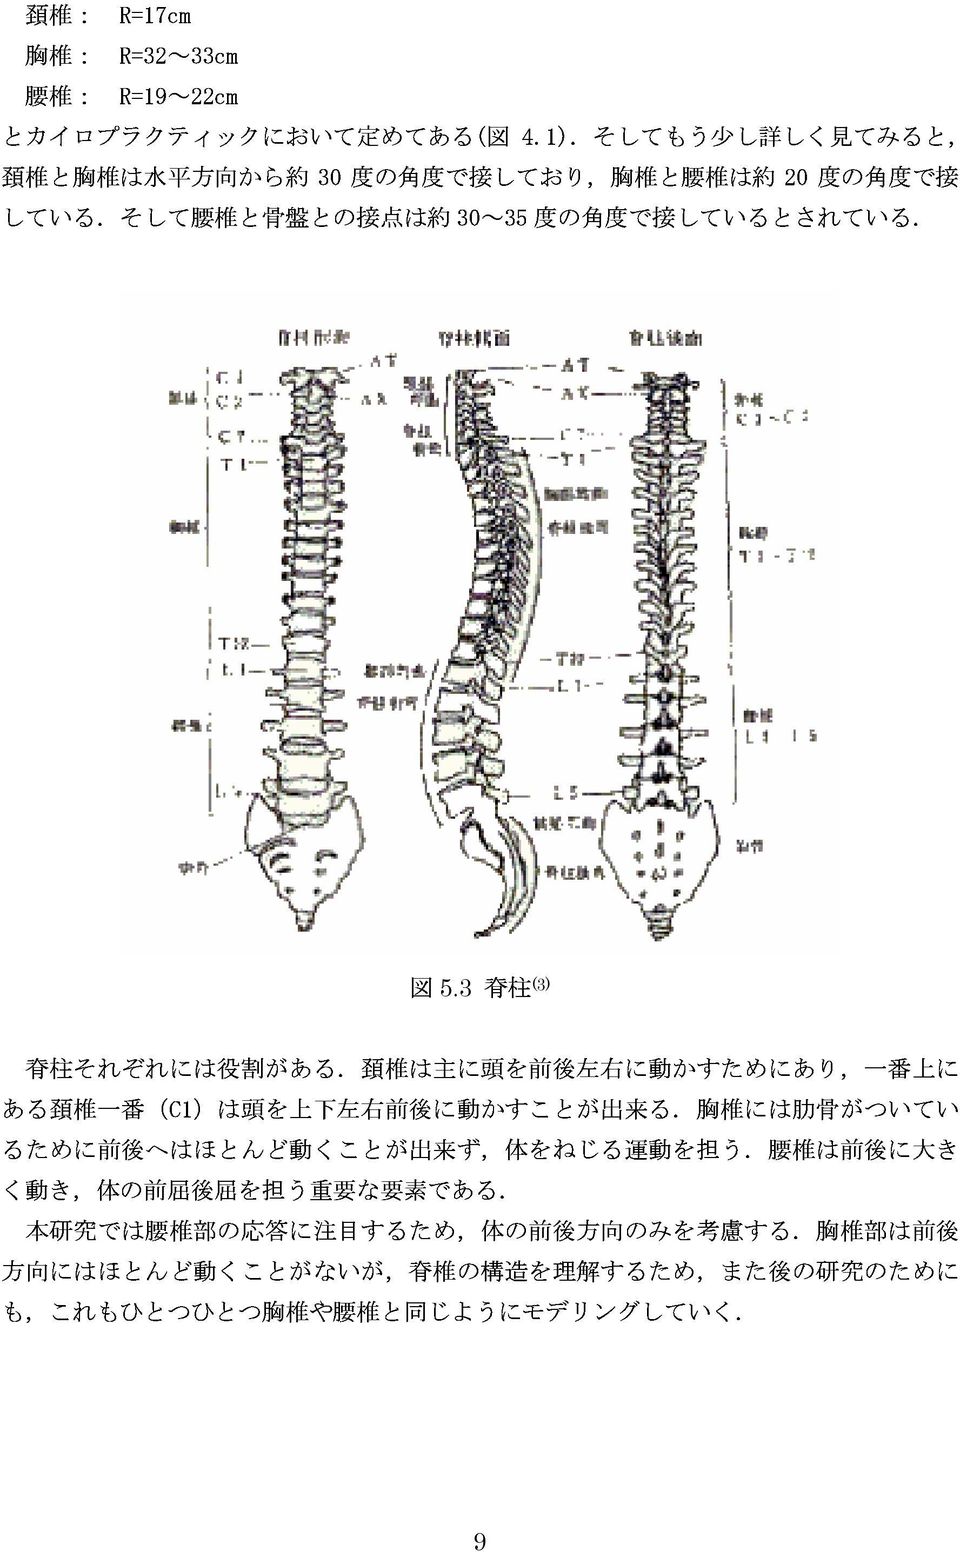 3 脊柱 (3) 脊柱それぞれには役割がある. 頚椎は主に頭を前後左右に動かすためにあり, 一番上にある頚椎一番 (C1) は頭を上下左右前後に動かすことが出来る.